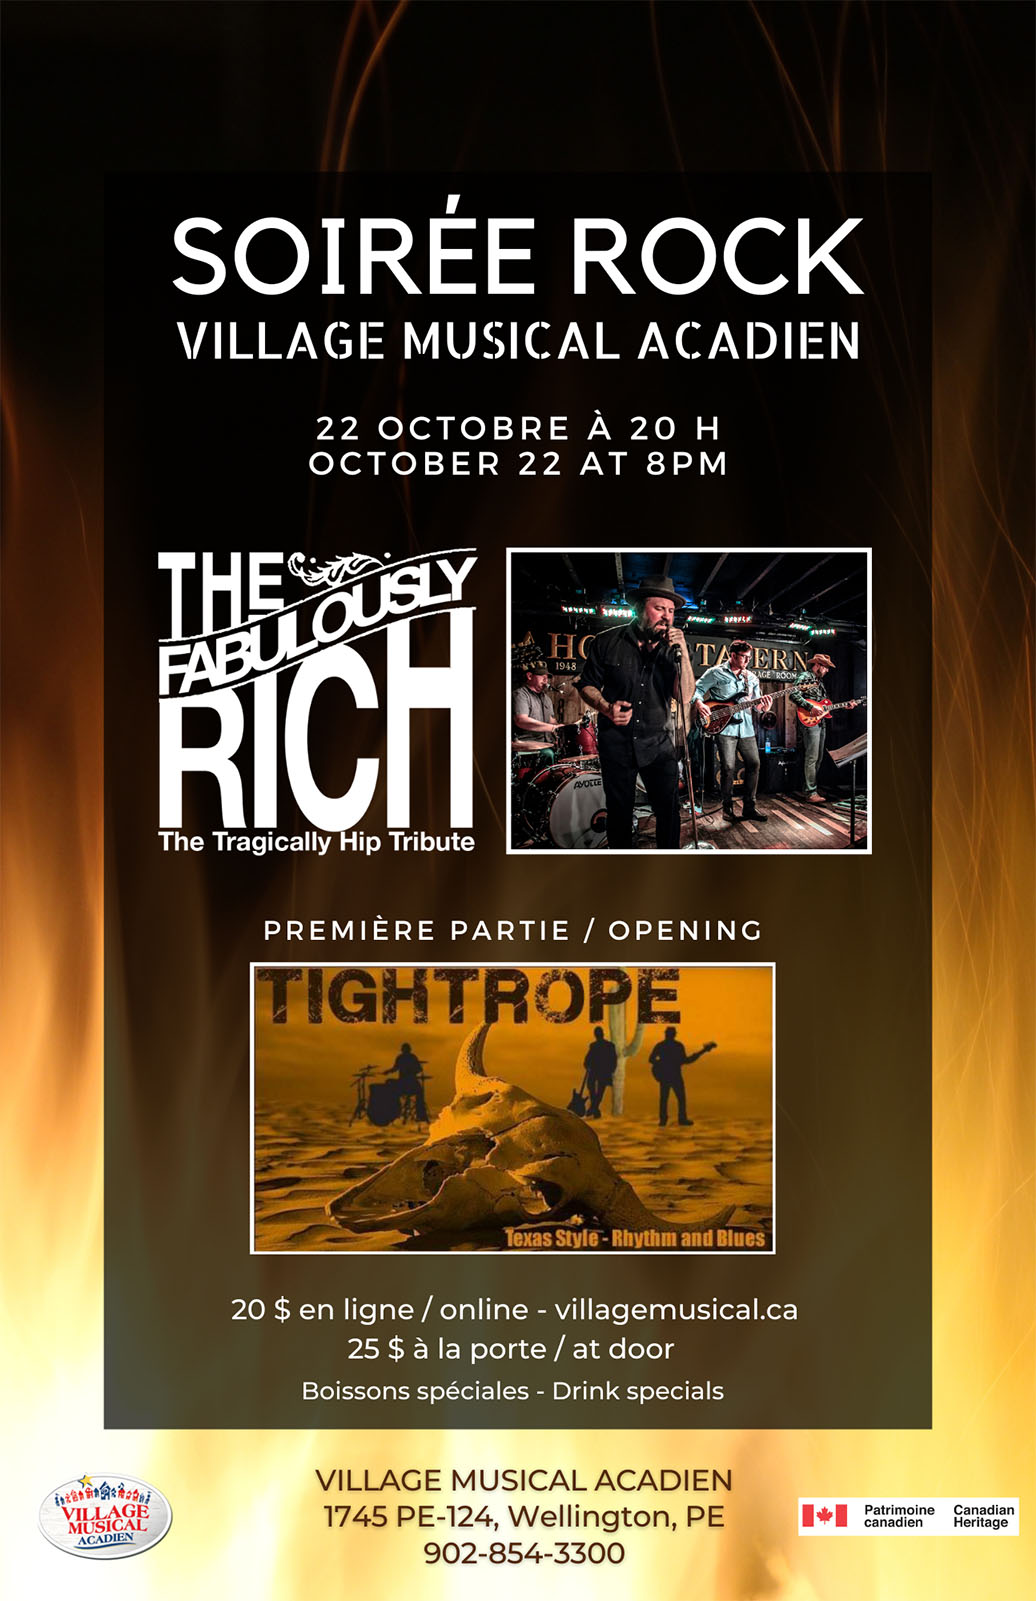 Soirée Rock – Village Musical Acadien - October 22 Octobre 2022